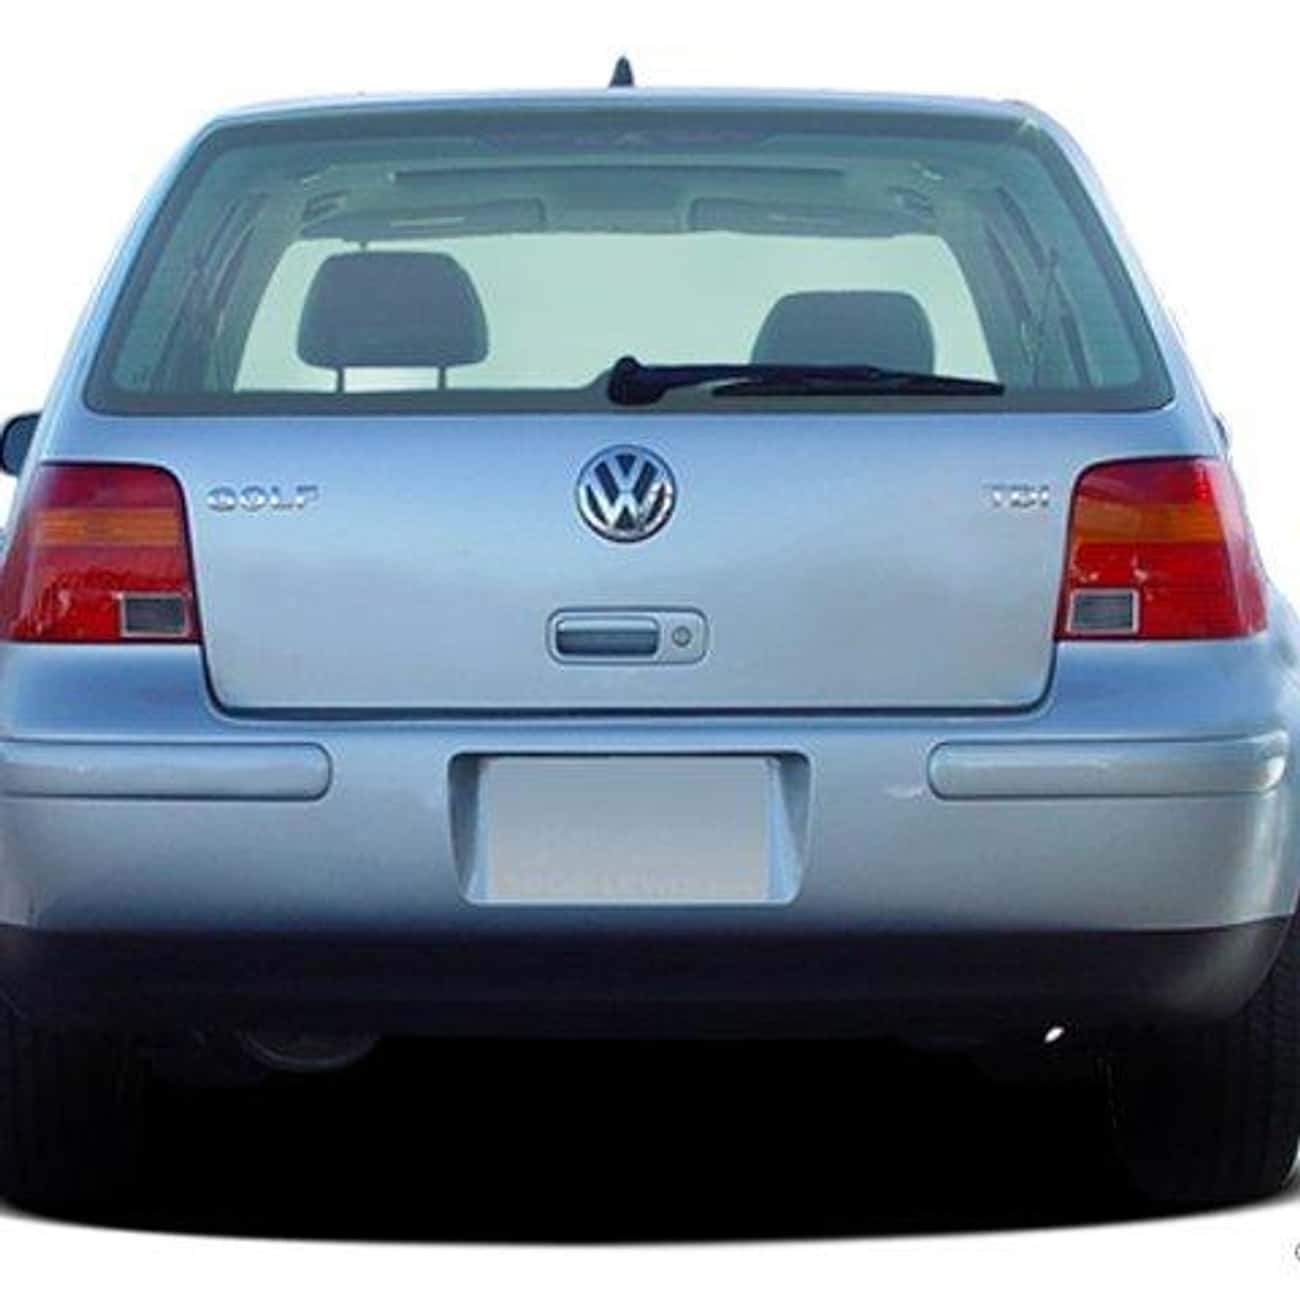 2005 Volkswagen Golf 4 Door Hatchback